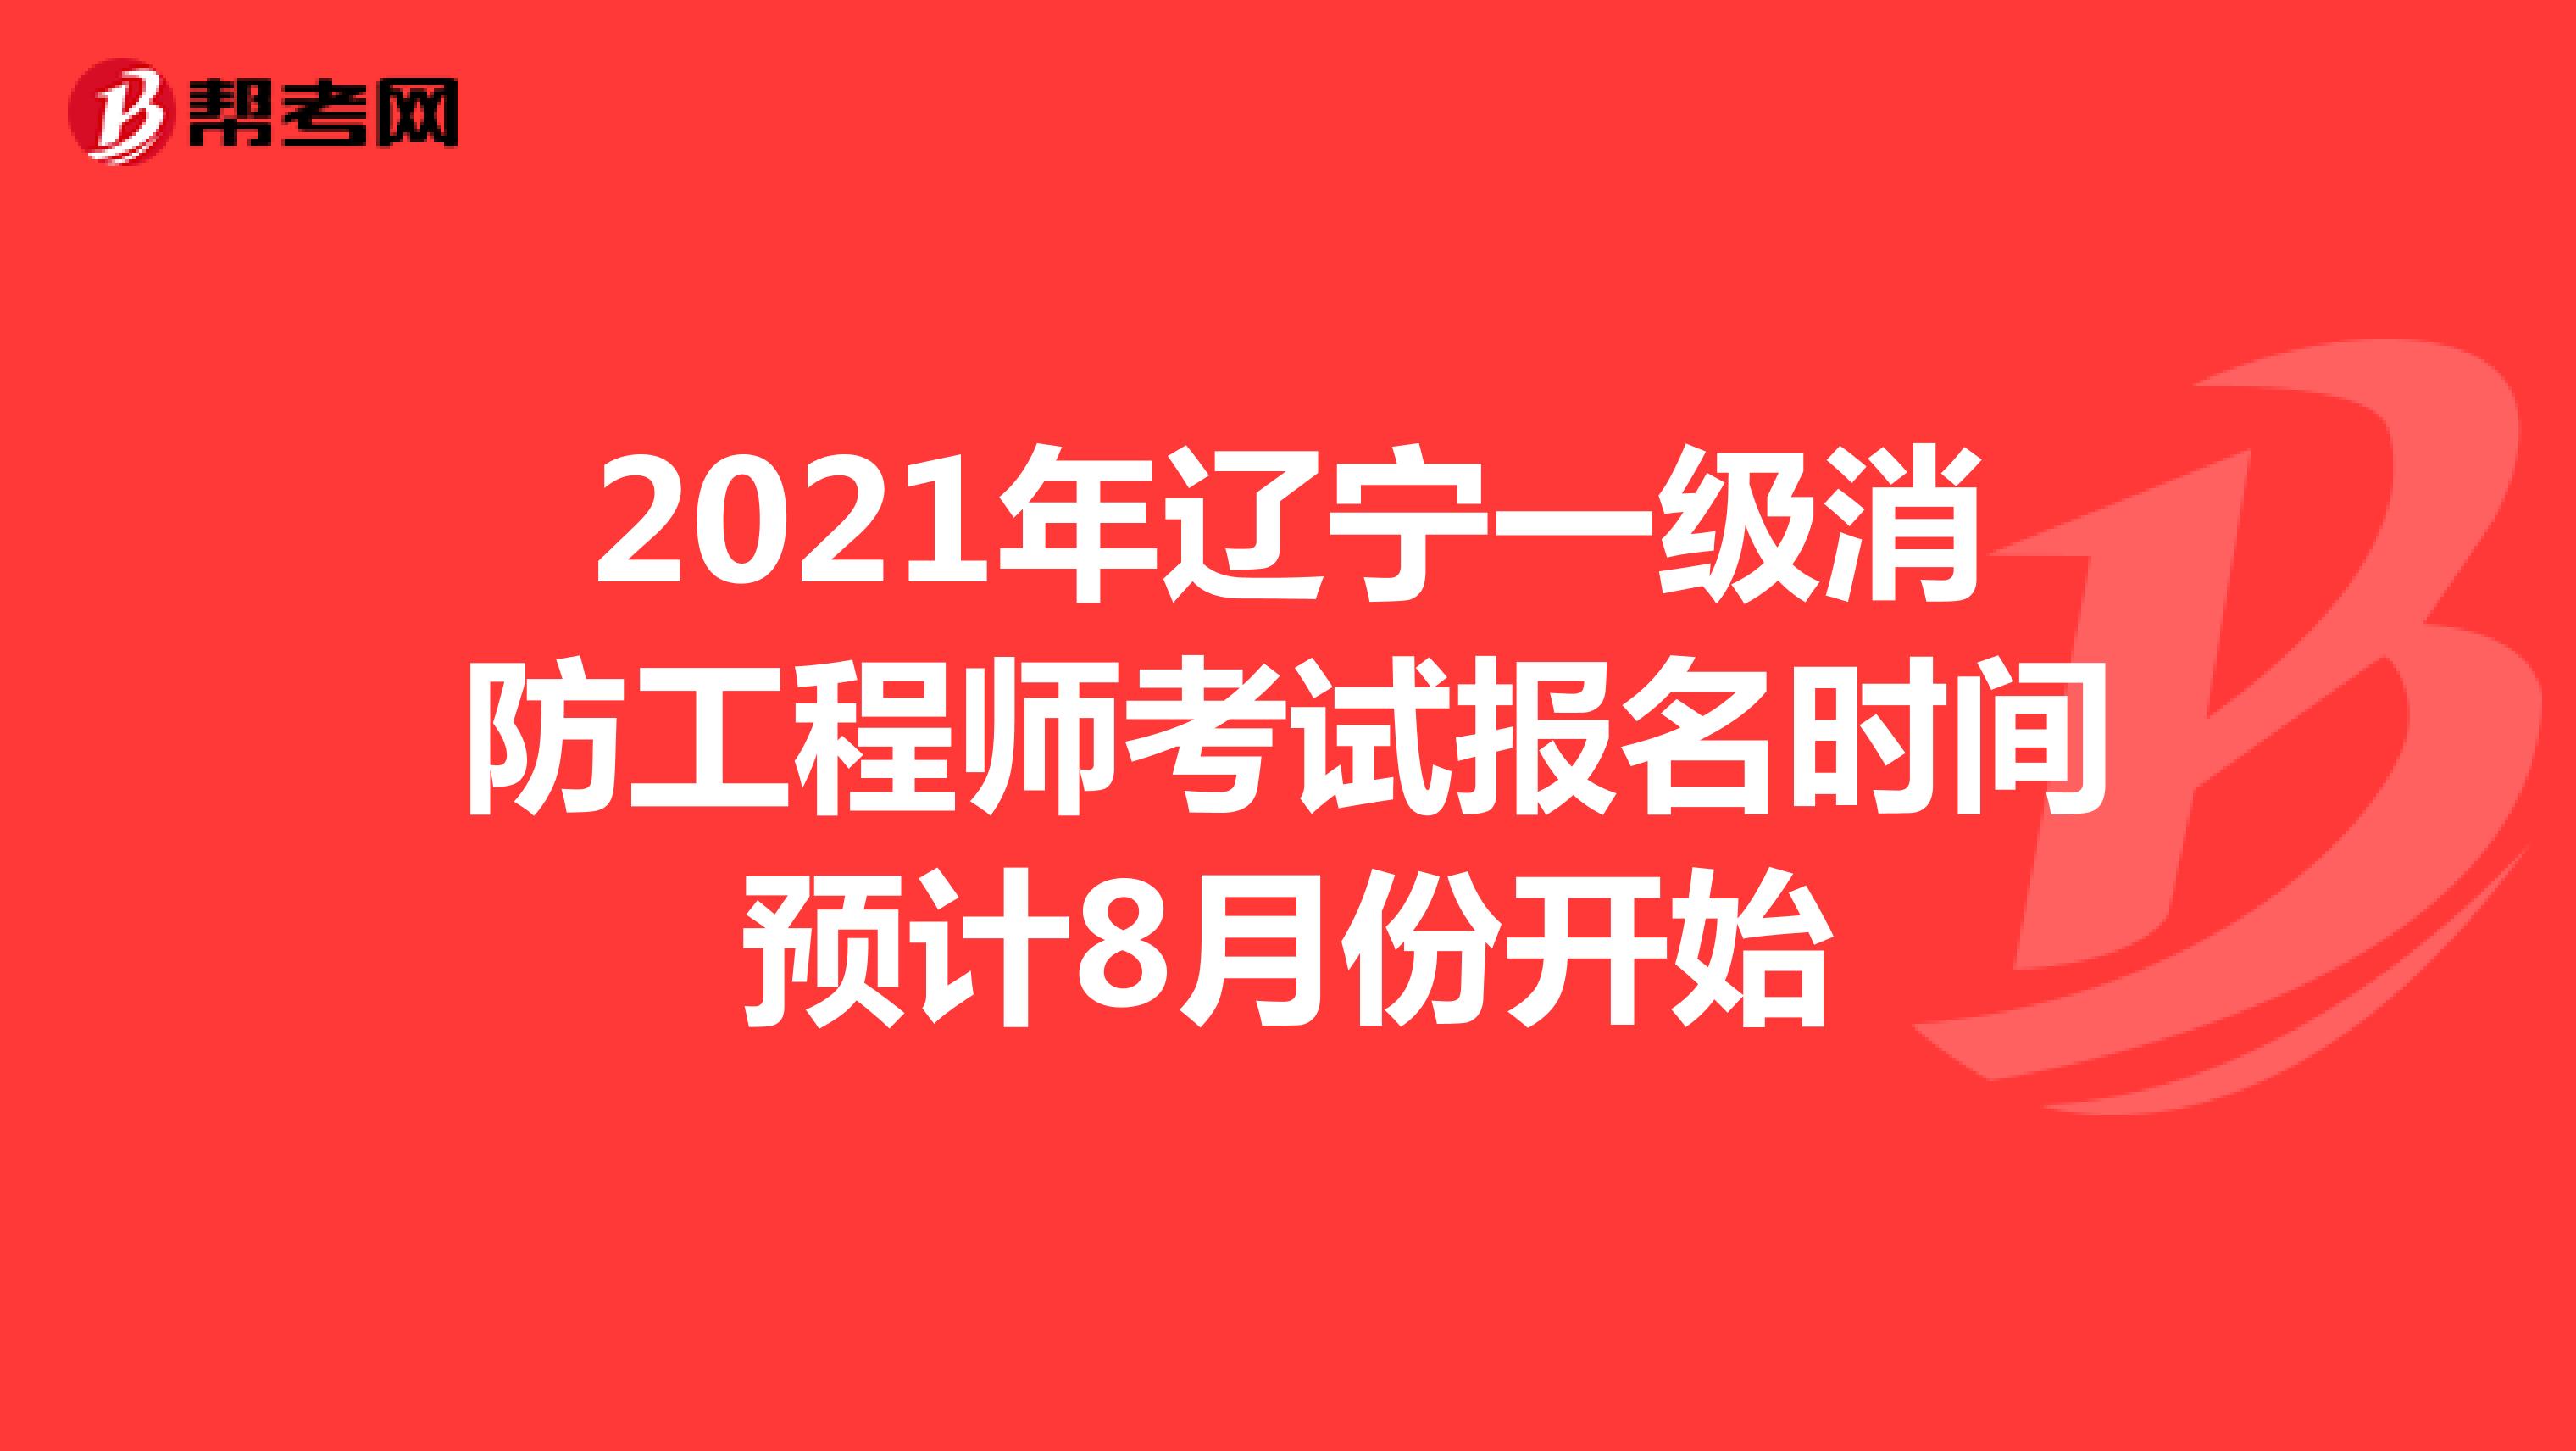 2021年辽宁一级消防工程师考试报名时间预计8月份开始